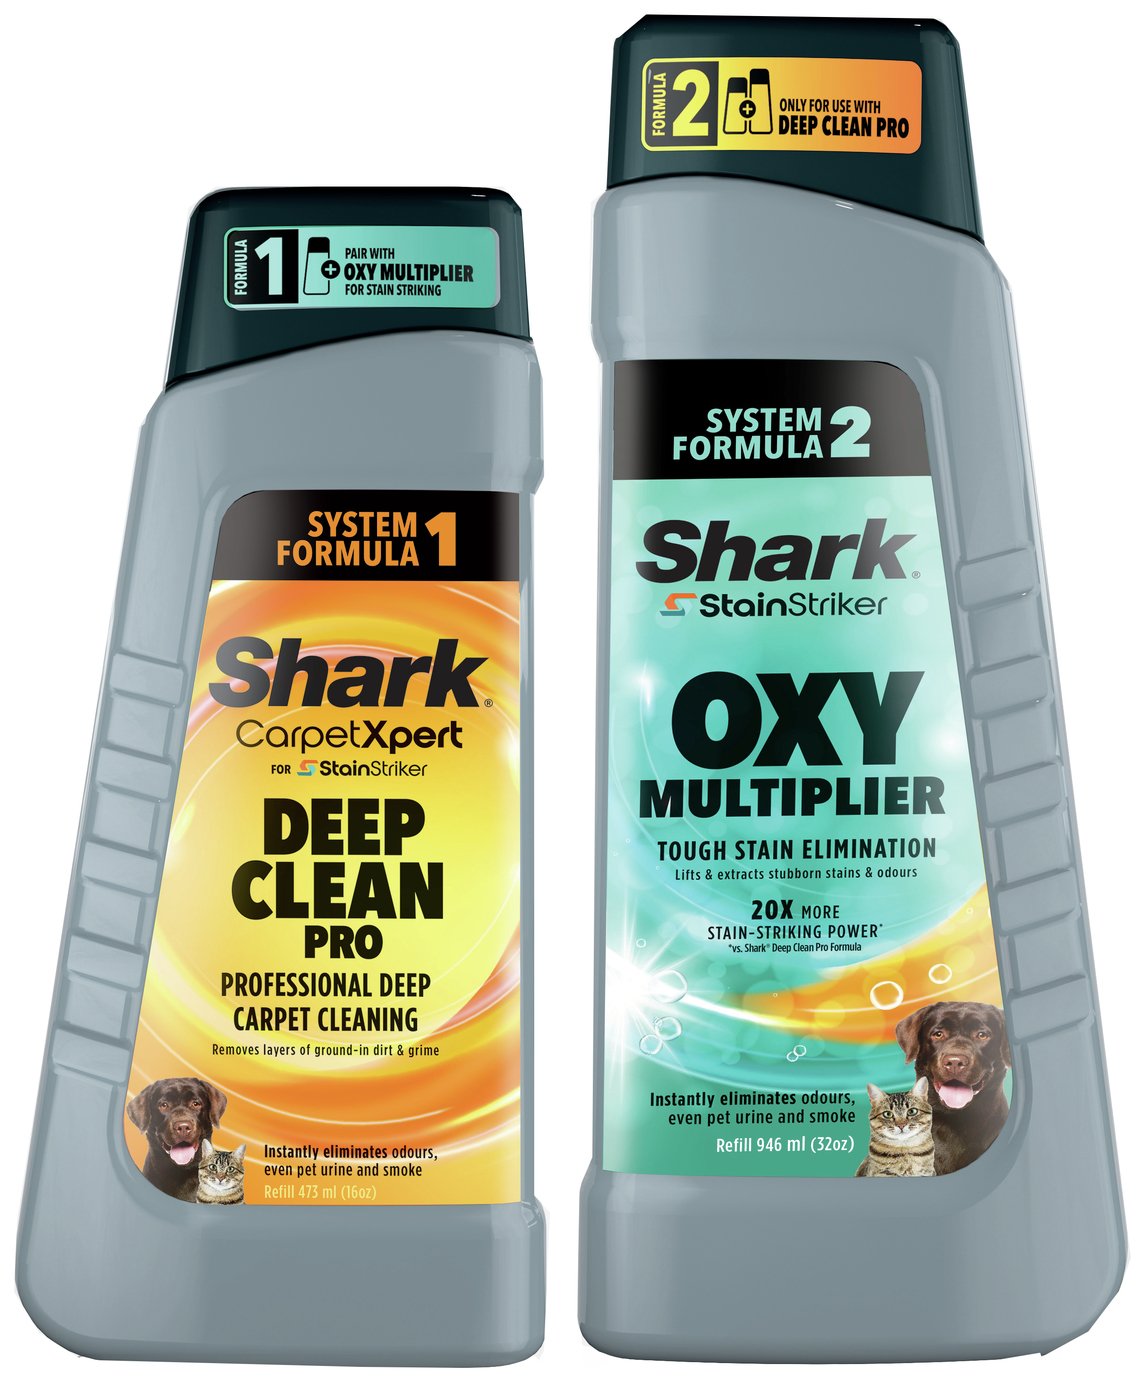 Shark's StainStriker & CarpetXpert Deep Clean Pro Solution